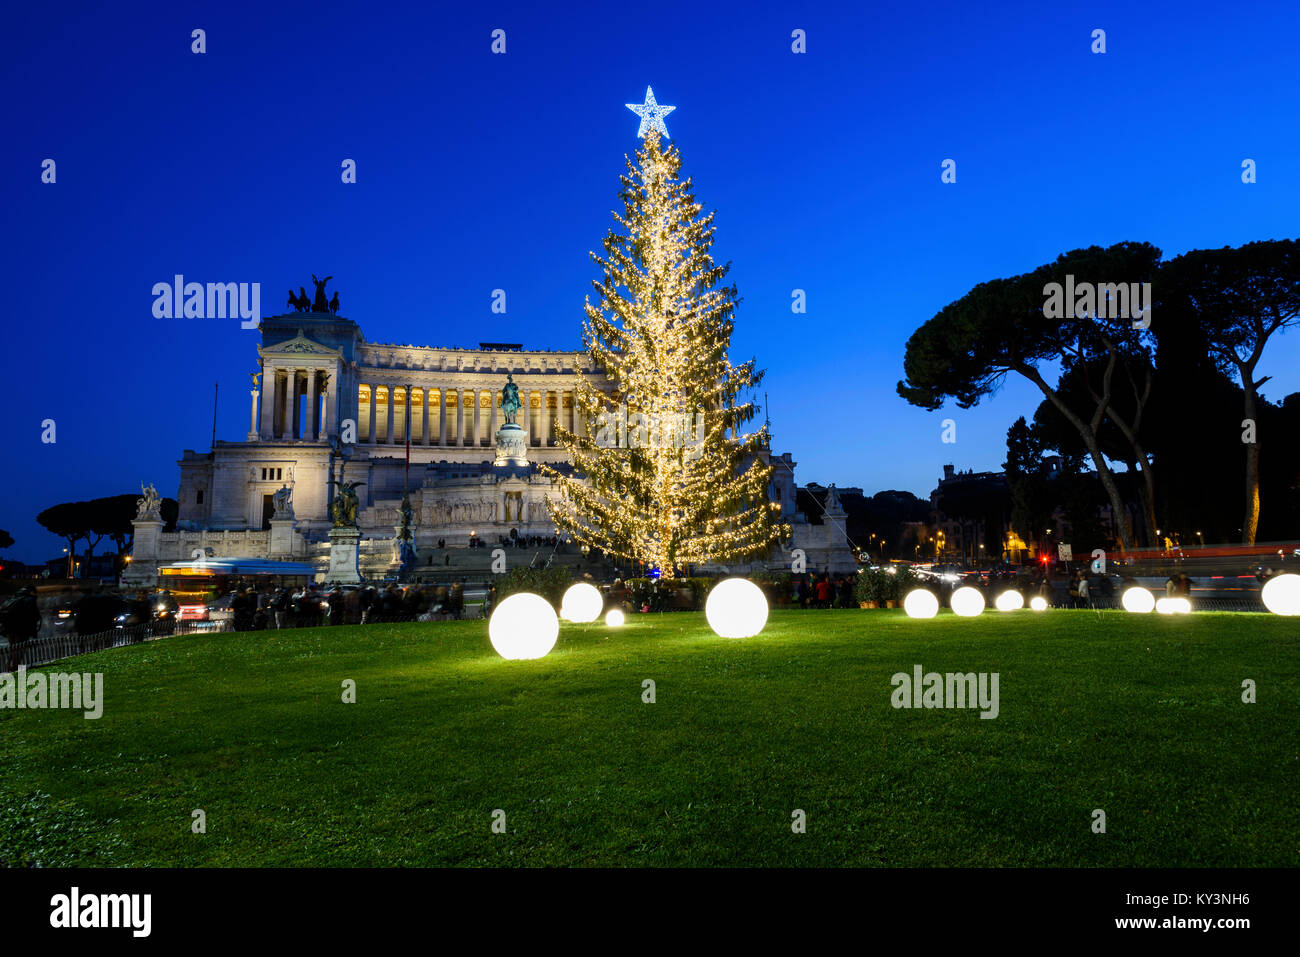 Der Weihnachtsbaum von Rom 2017 Spelacchio, in einer Nacht Aussicht auf die Piazza Venezia mit dem Denkmal der Altar des Vaterlandes auf Hintergrund aufgerufen. Stockfoto